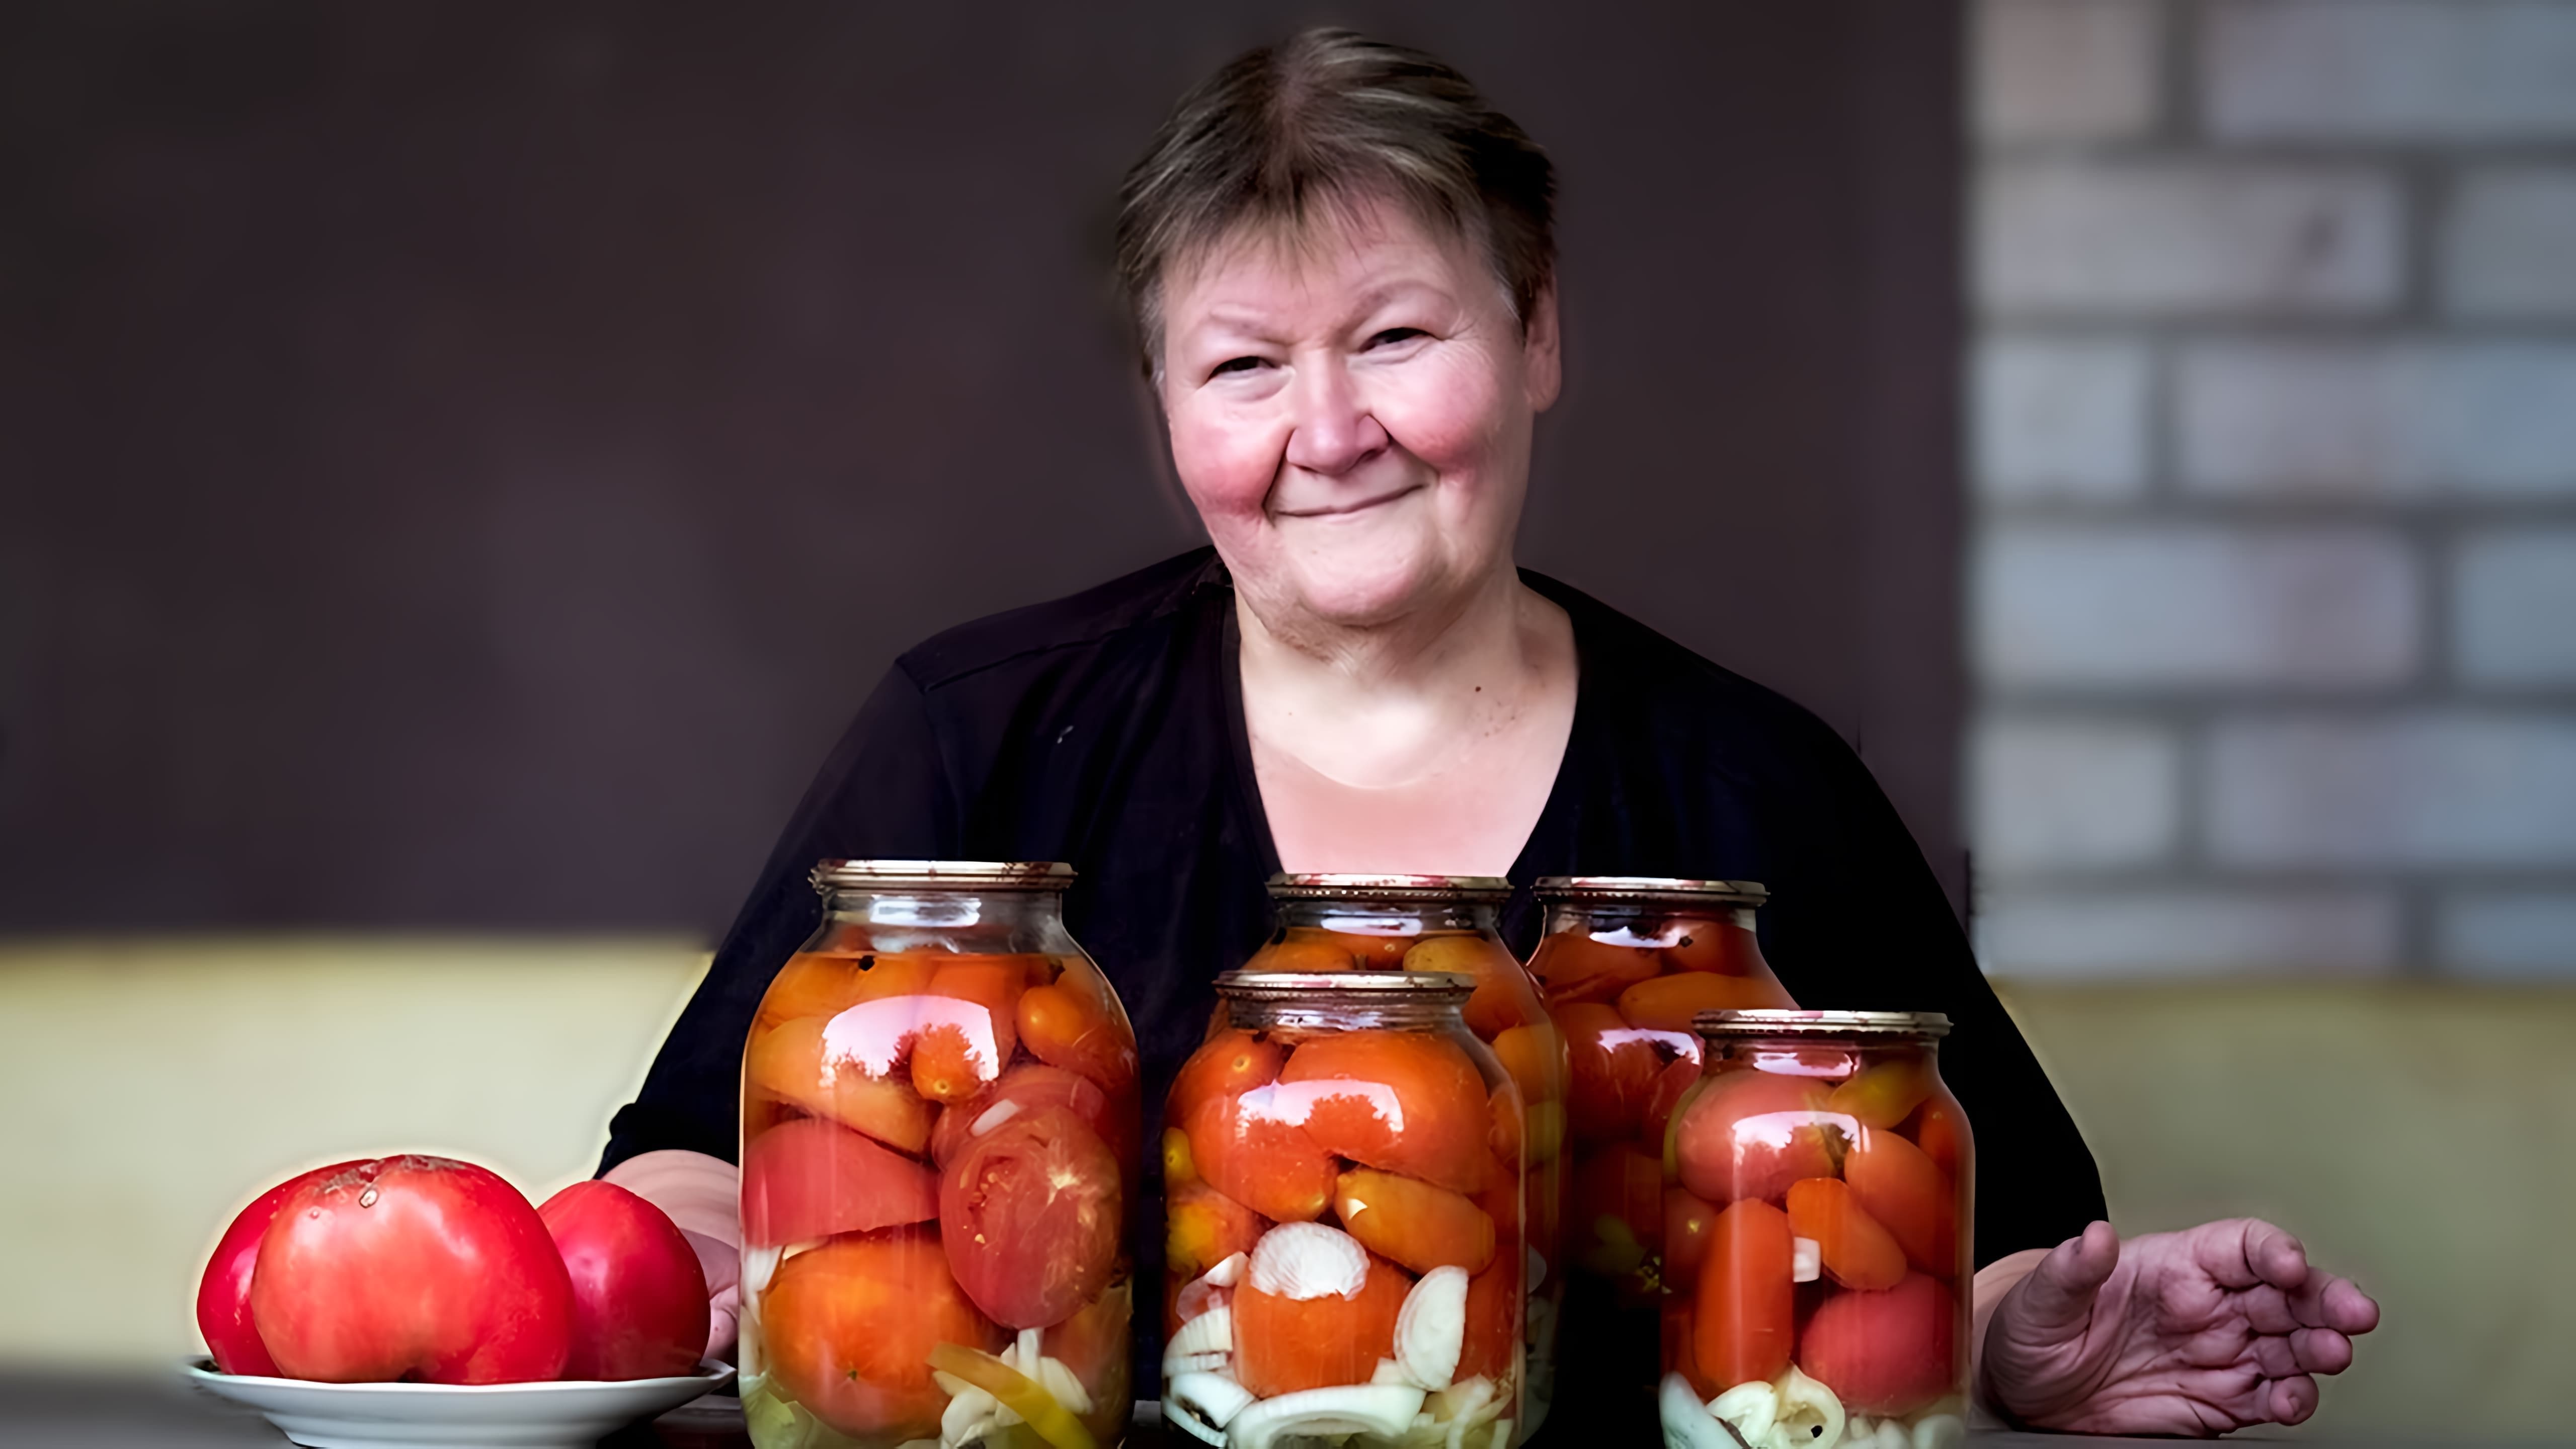 Видео посвящено консервированию помидоров на зиму с использованием любимого рецепта маринованных помидоров